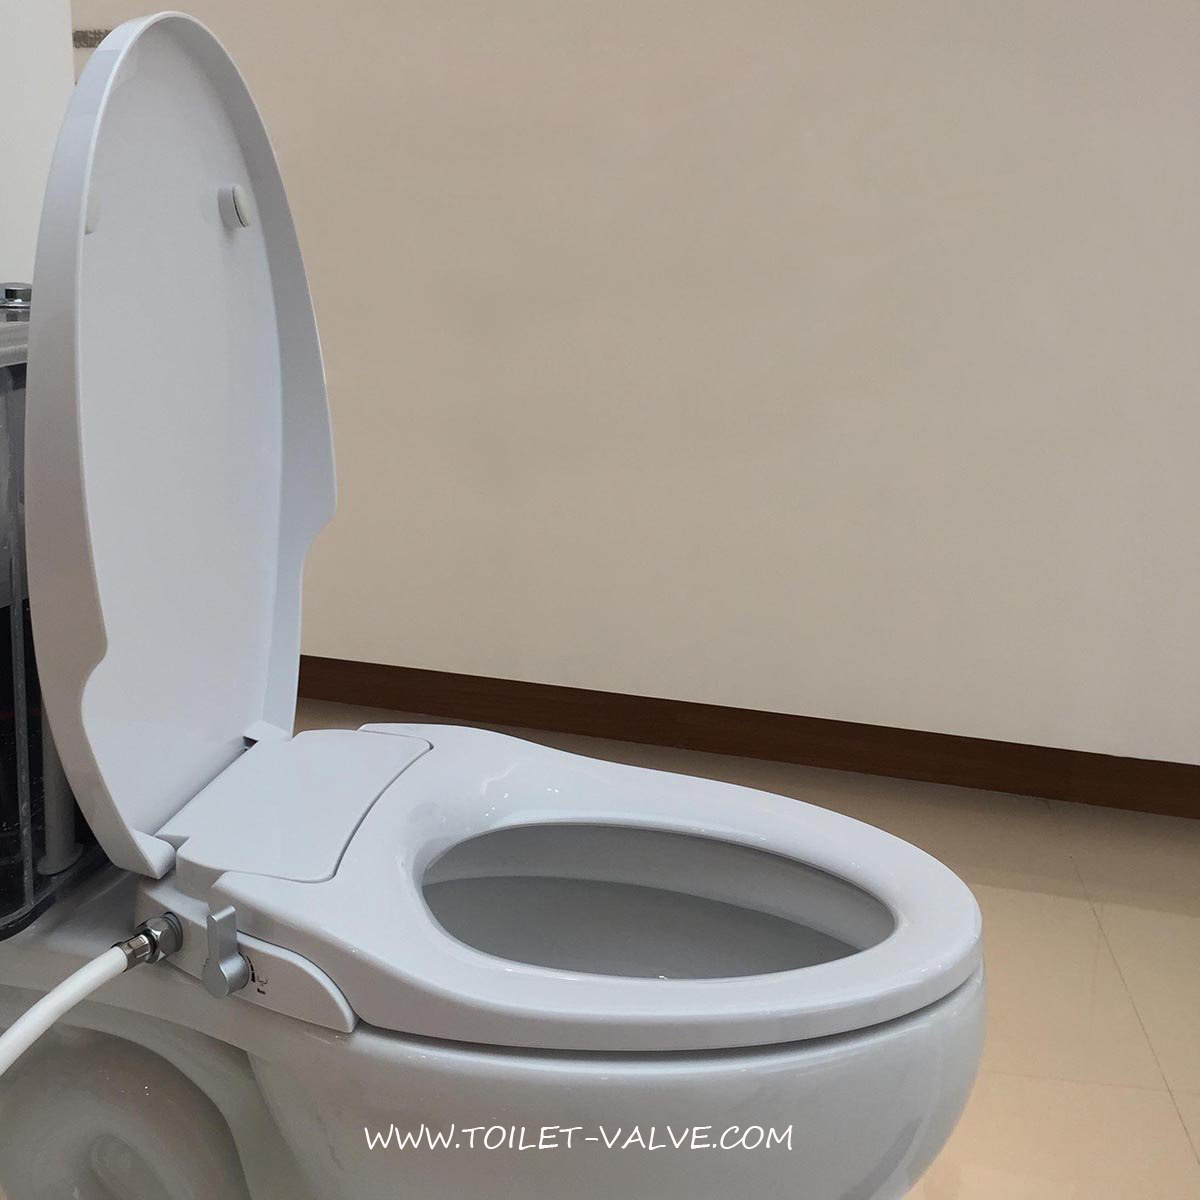 Non Electric Toilet Bidet Seat XY106